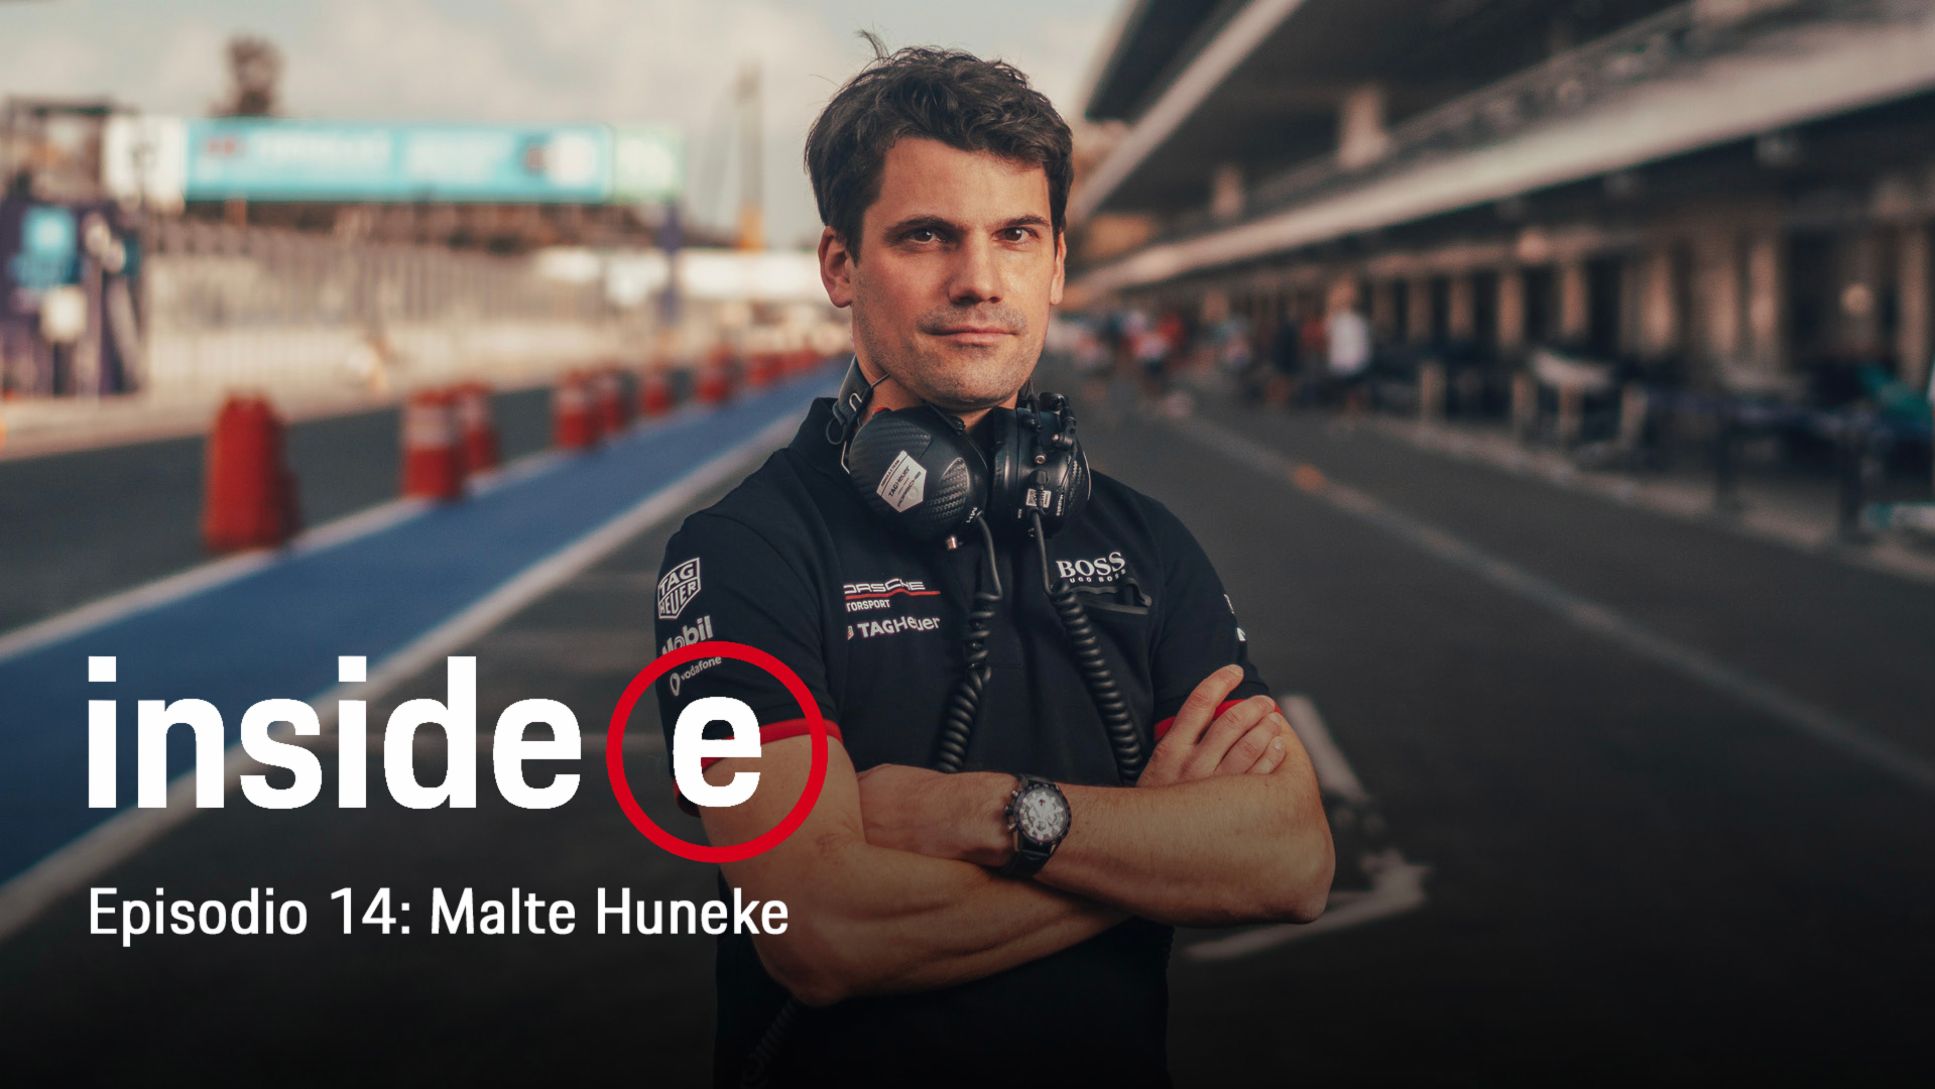 Podcast “Inside E”, episodio 14 con Malte Huneke, 2020, Porsche AG